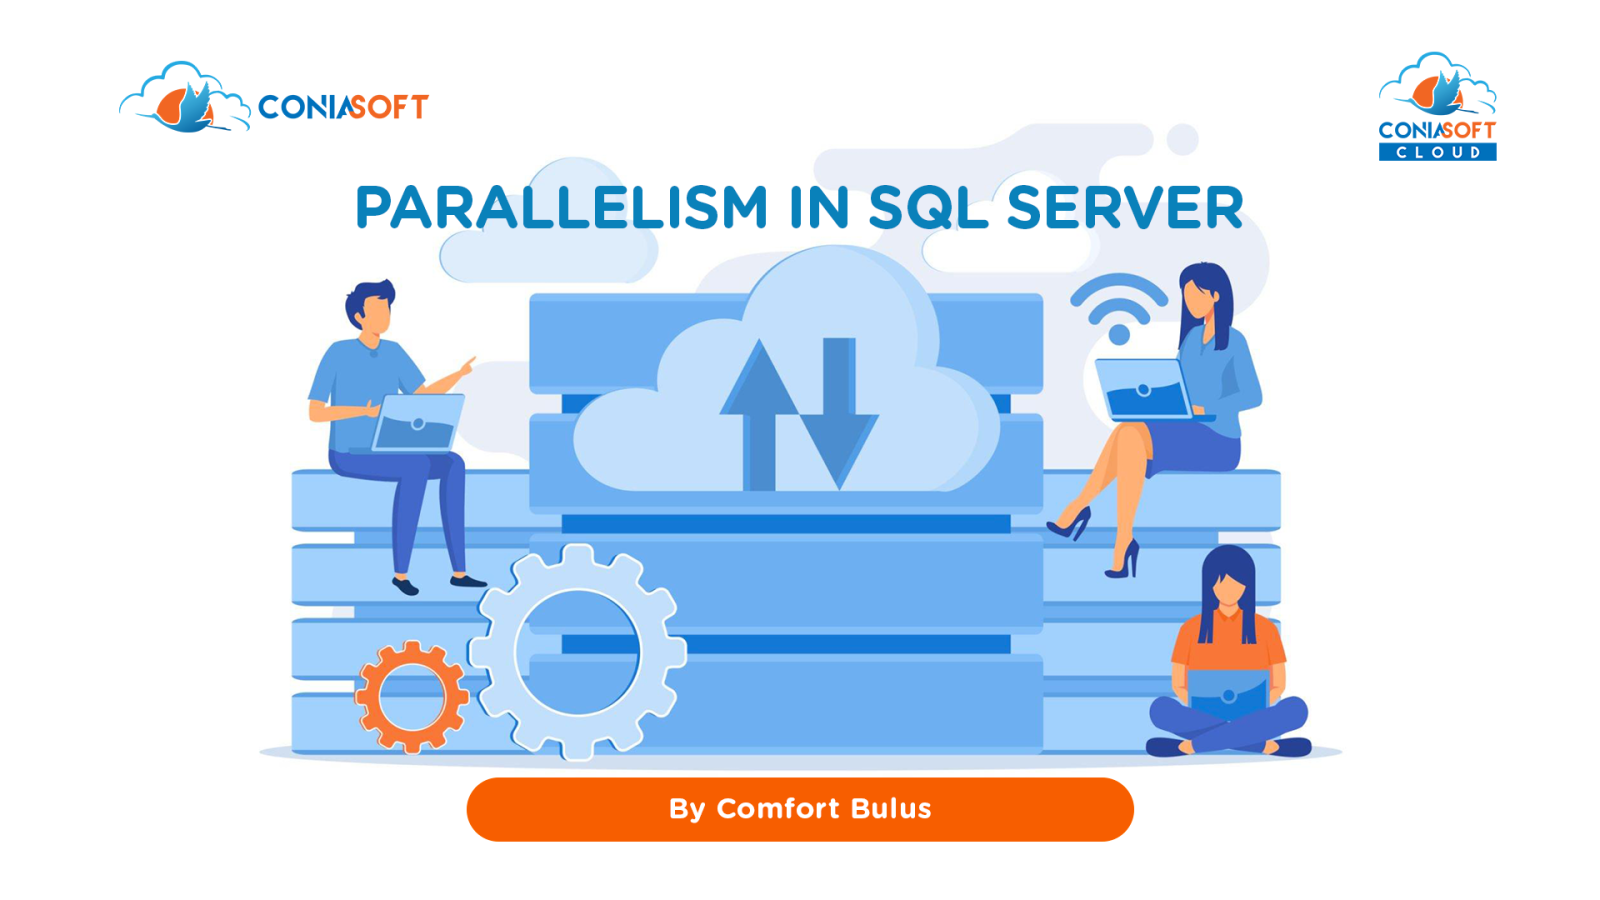 PARALLELISM IN SQL SERVER